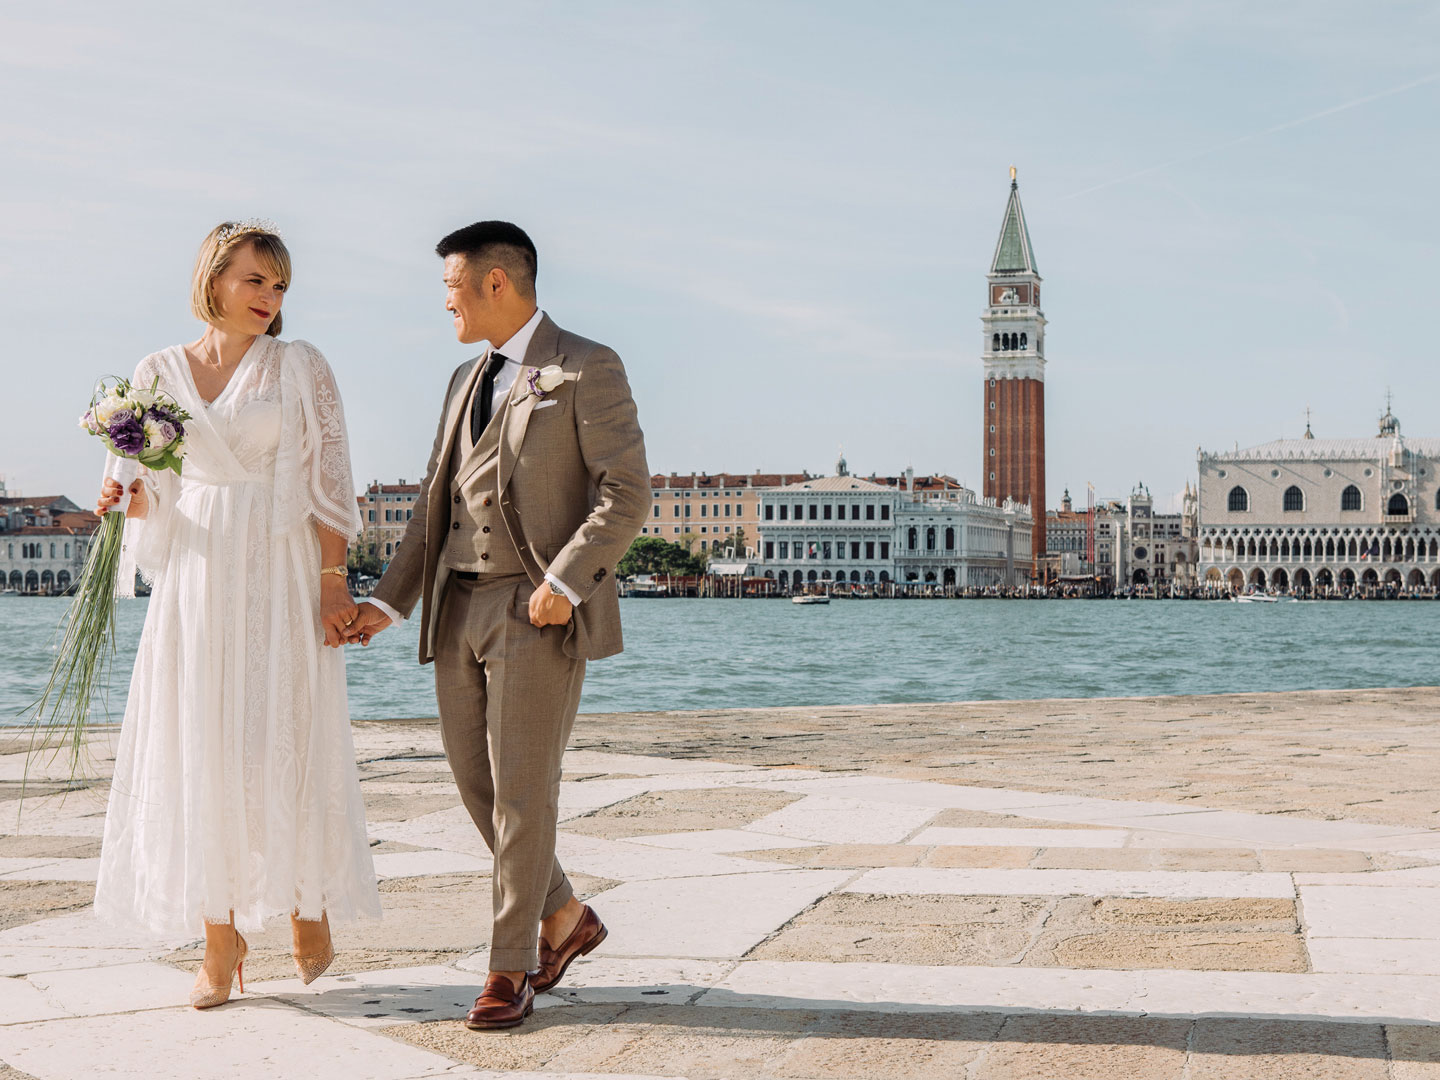 Filippo Ciappi - Fotografo Venezia - Fotografo di Matrimonio a Venezia